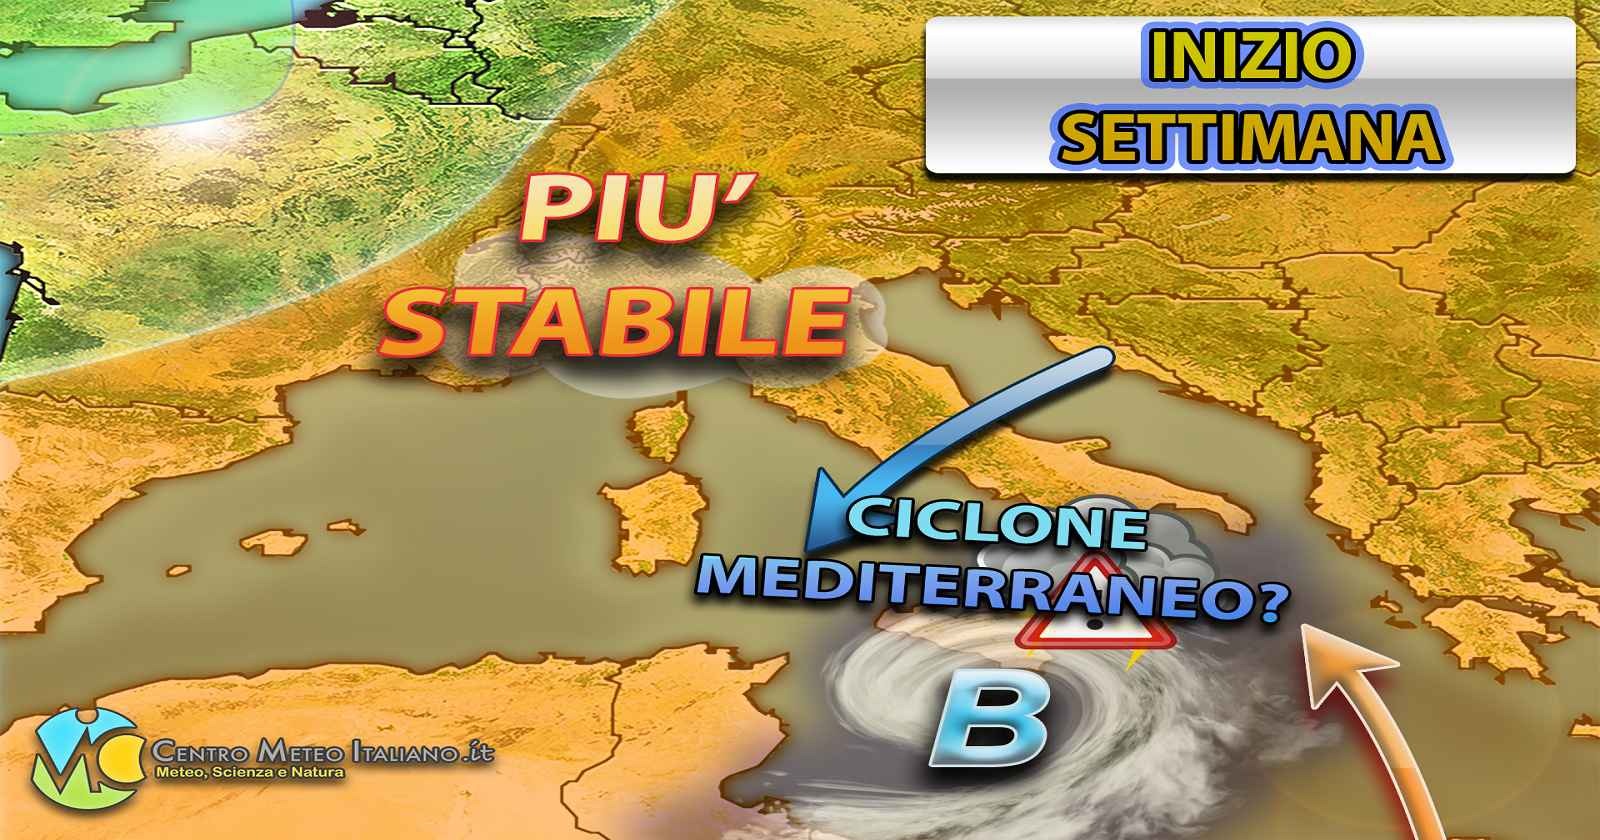 METEO - CICLONE MEDITERRANEO si azionerà portando NUBIFRAGI in alcune zone d'ITALIA, ecco dove